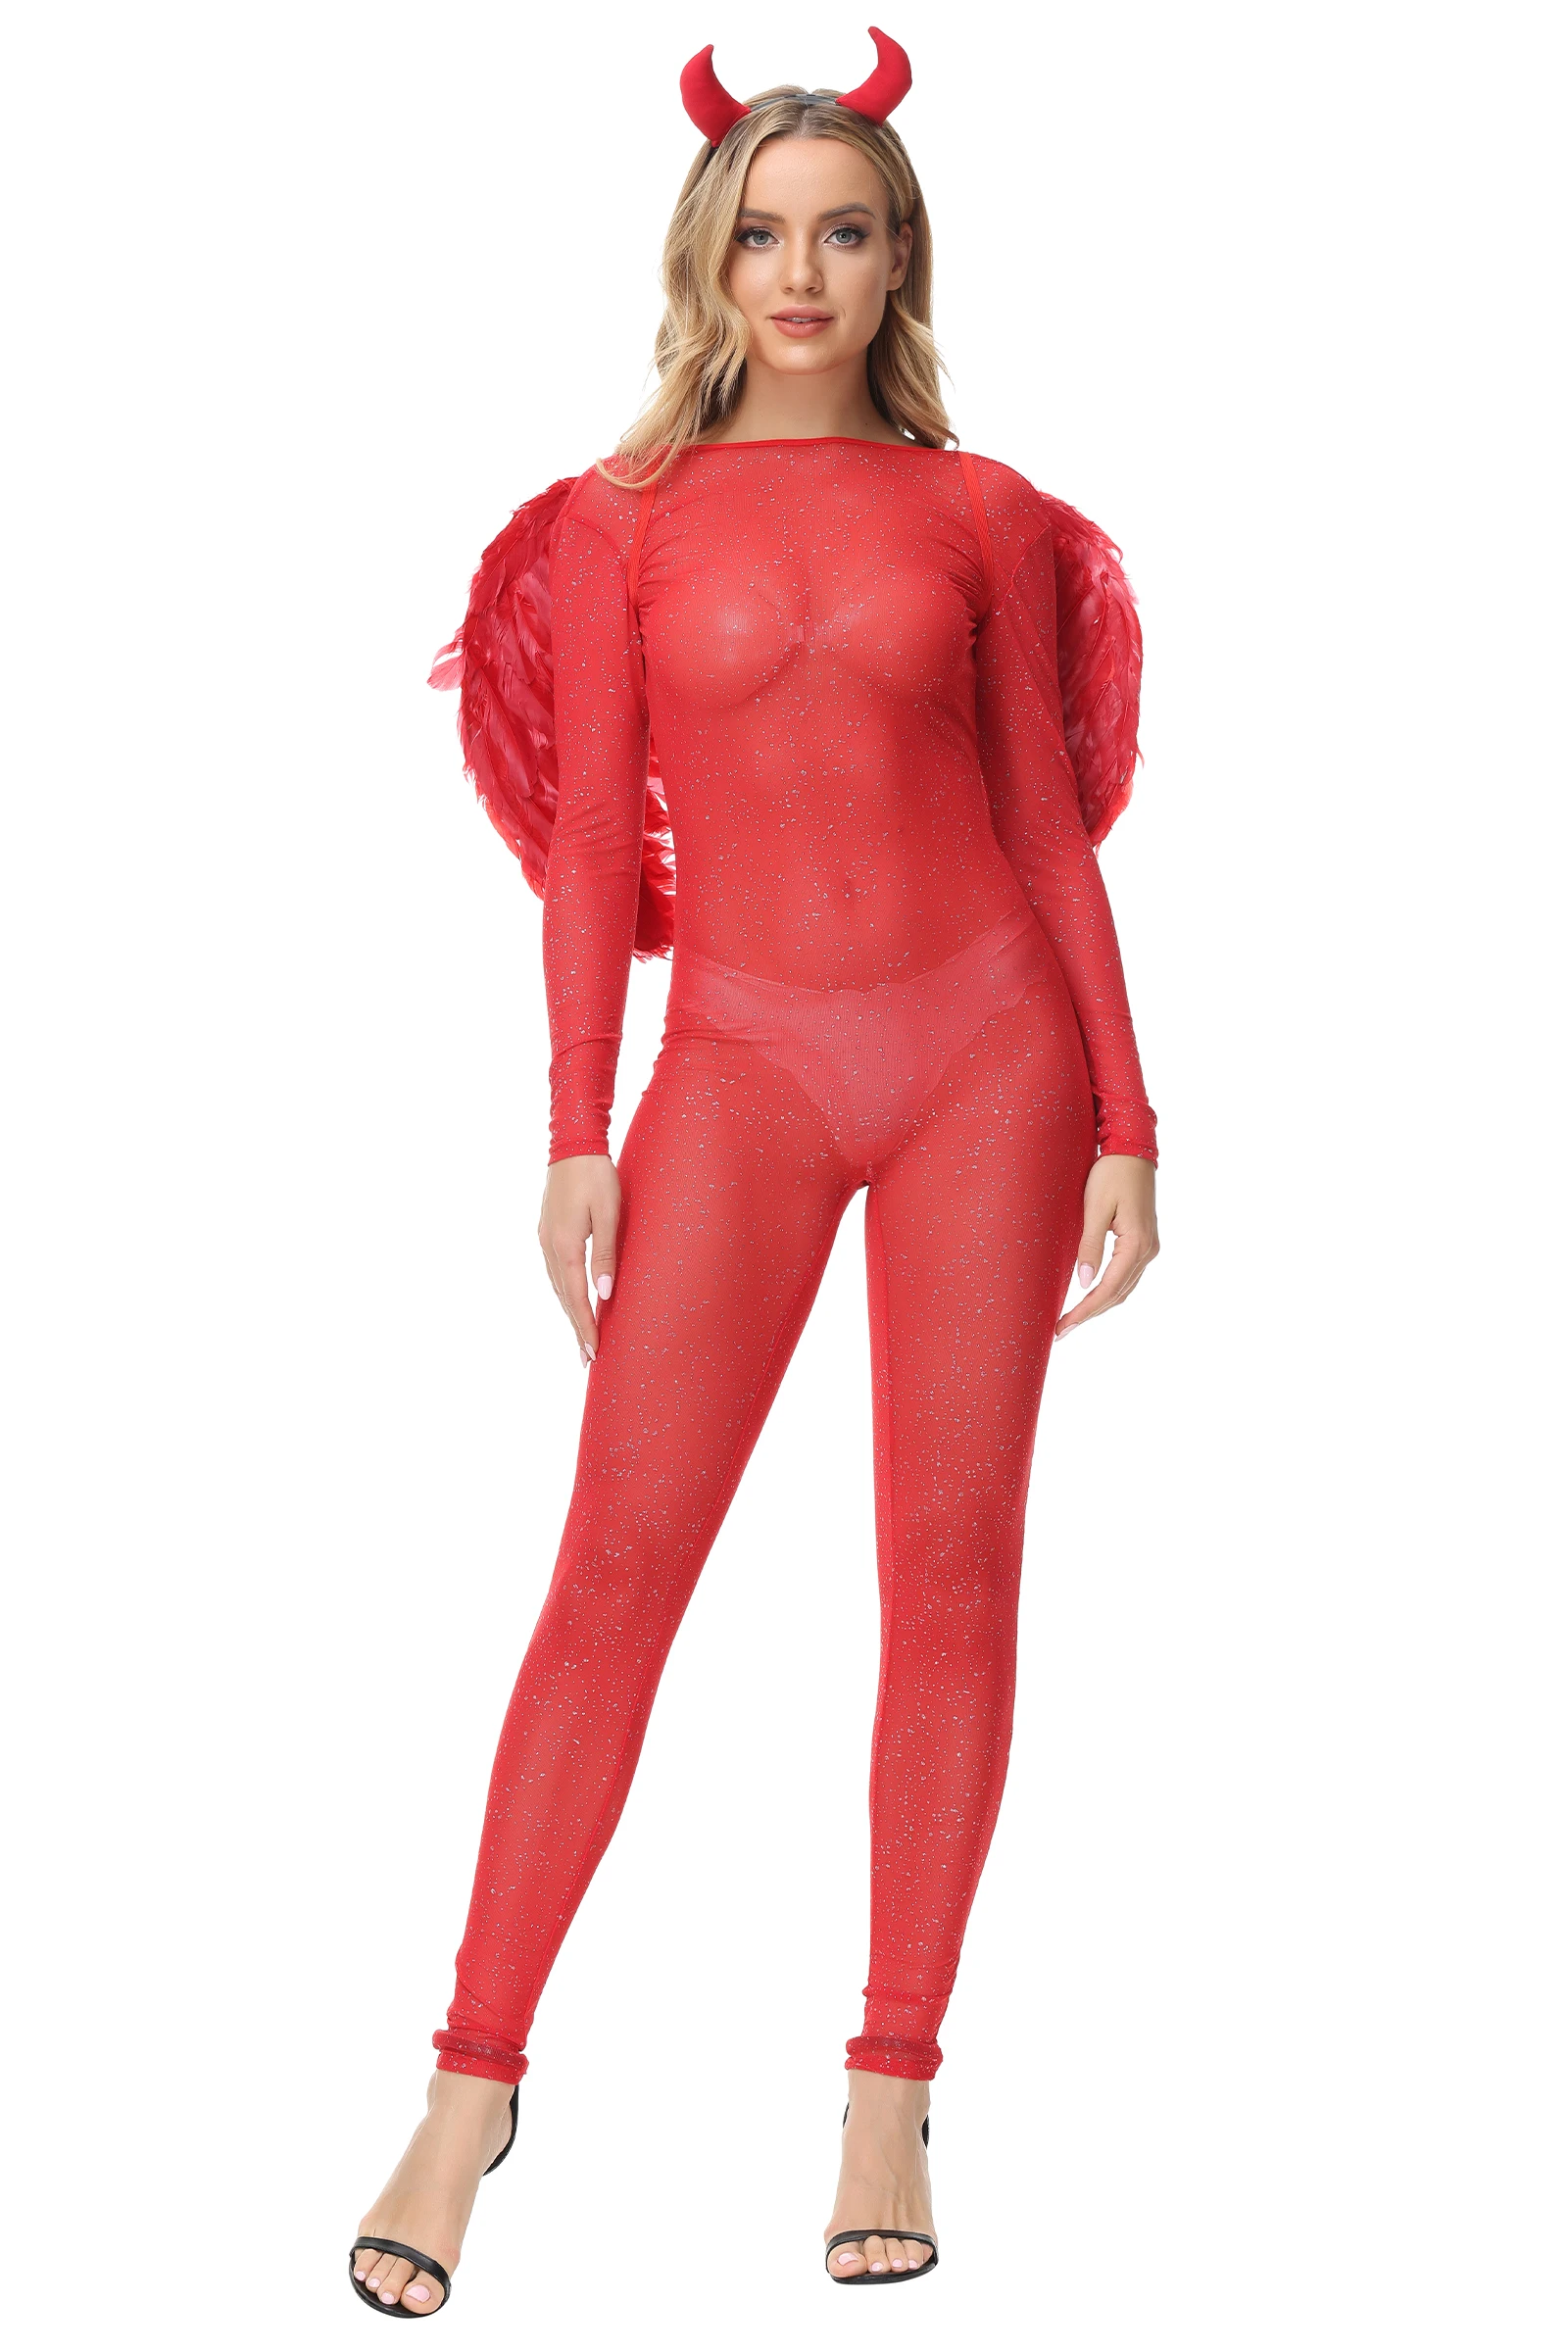 Форма для косплея Red Devil для женщин Сексуальное боди с крыльями Головной убор Хэллоуин Вечеринка Демон Ангел Комбинезон Сценический костюм Изображение 1